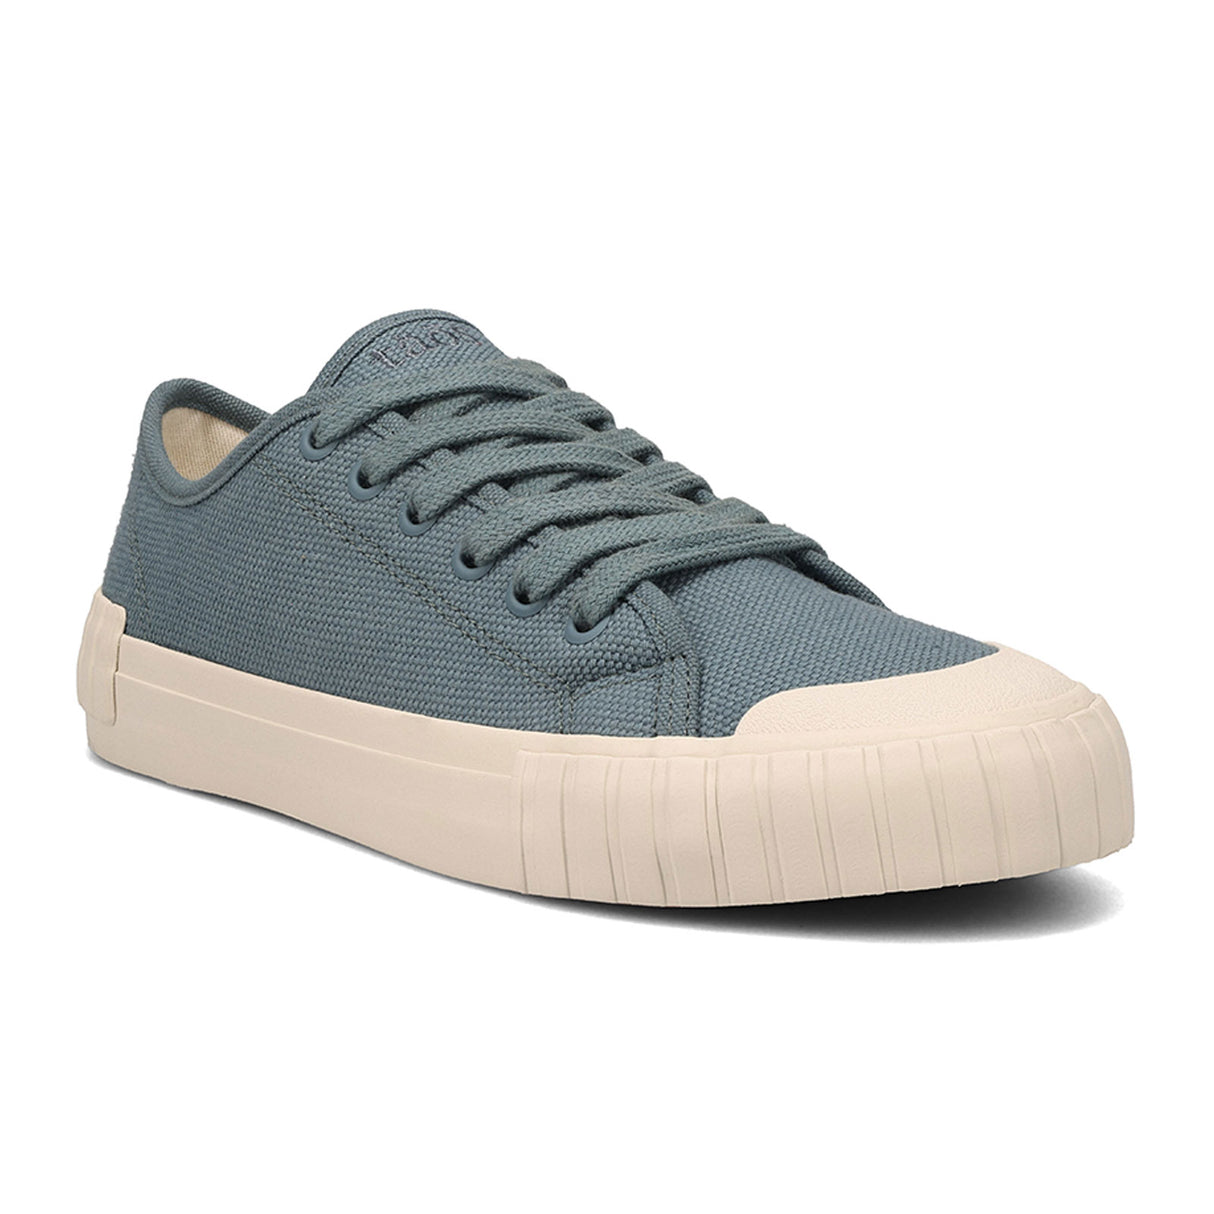 Taos One Vision Sneaker (Women) - Dusty Blue Dress-Casual - Sneakers - The Heel Shoe Fitters